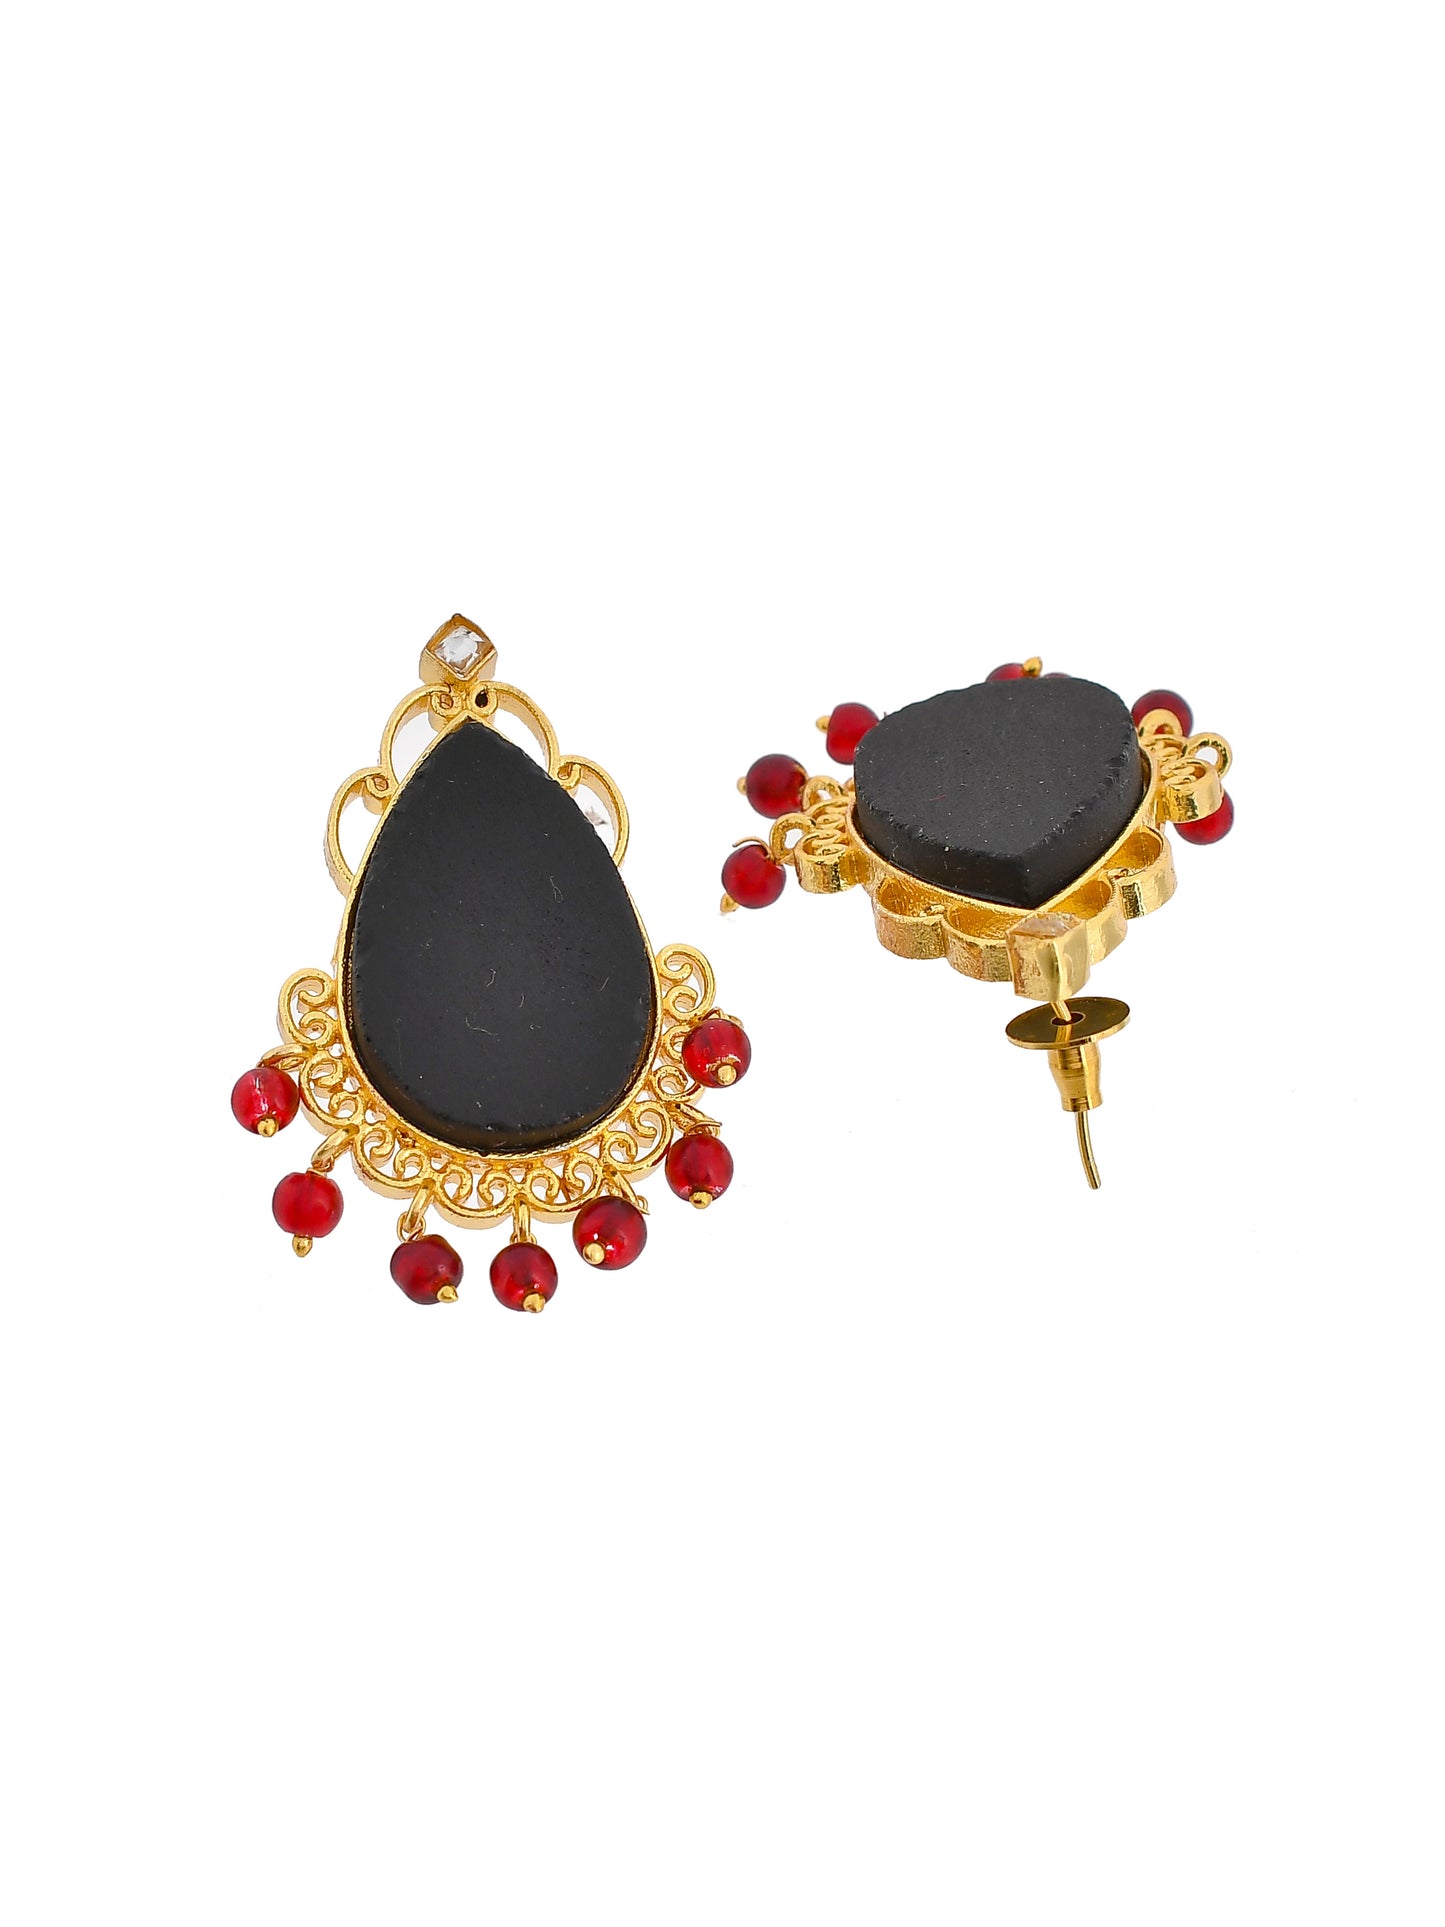 Ethnic Black stone Earrings for Women